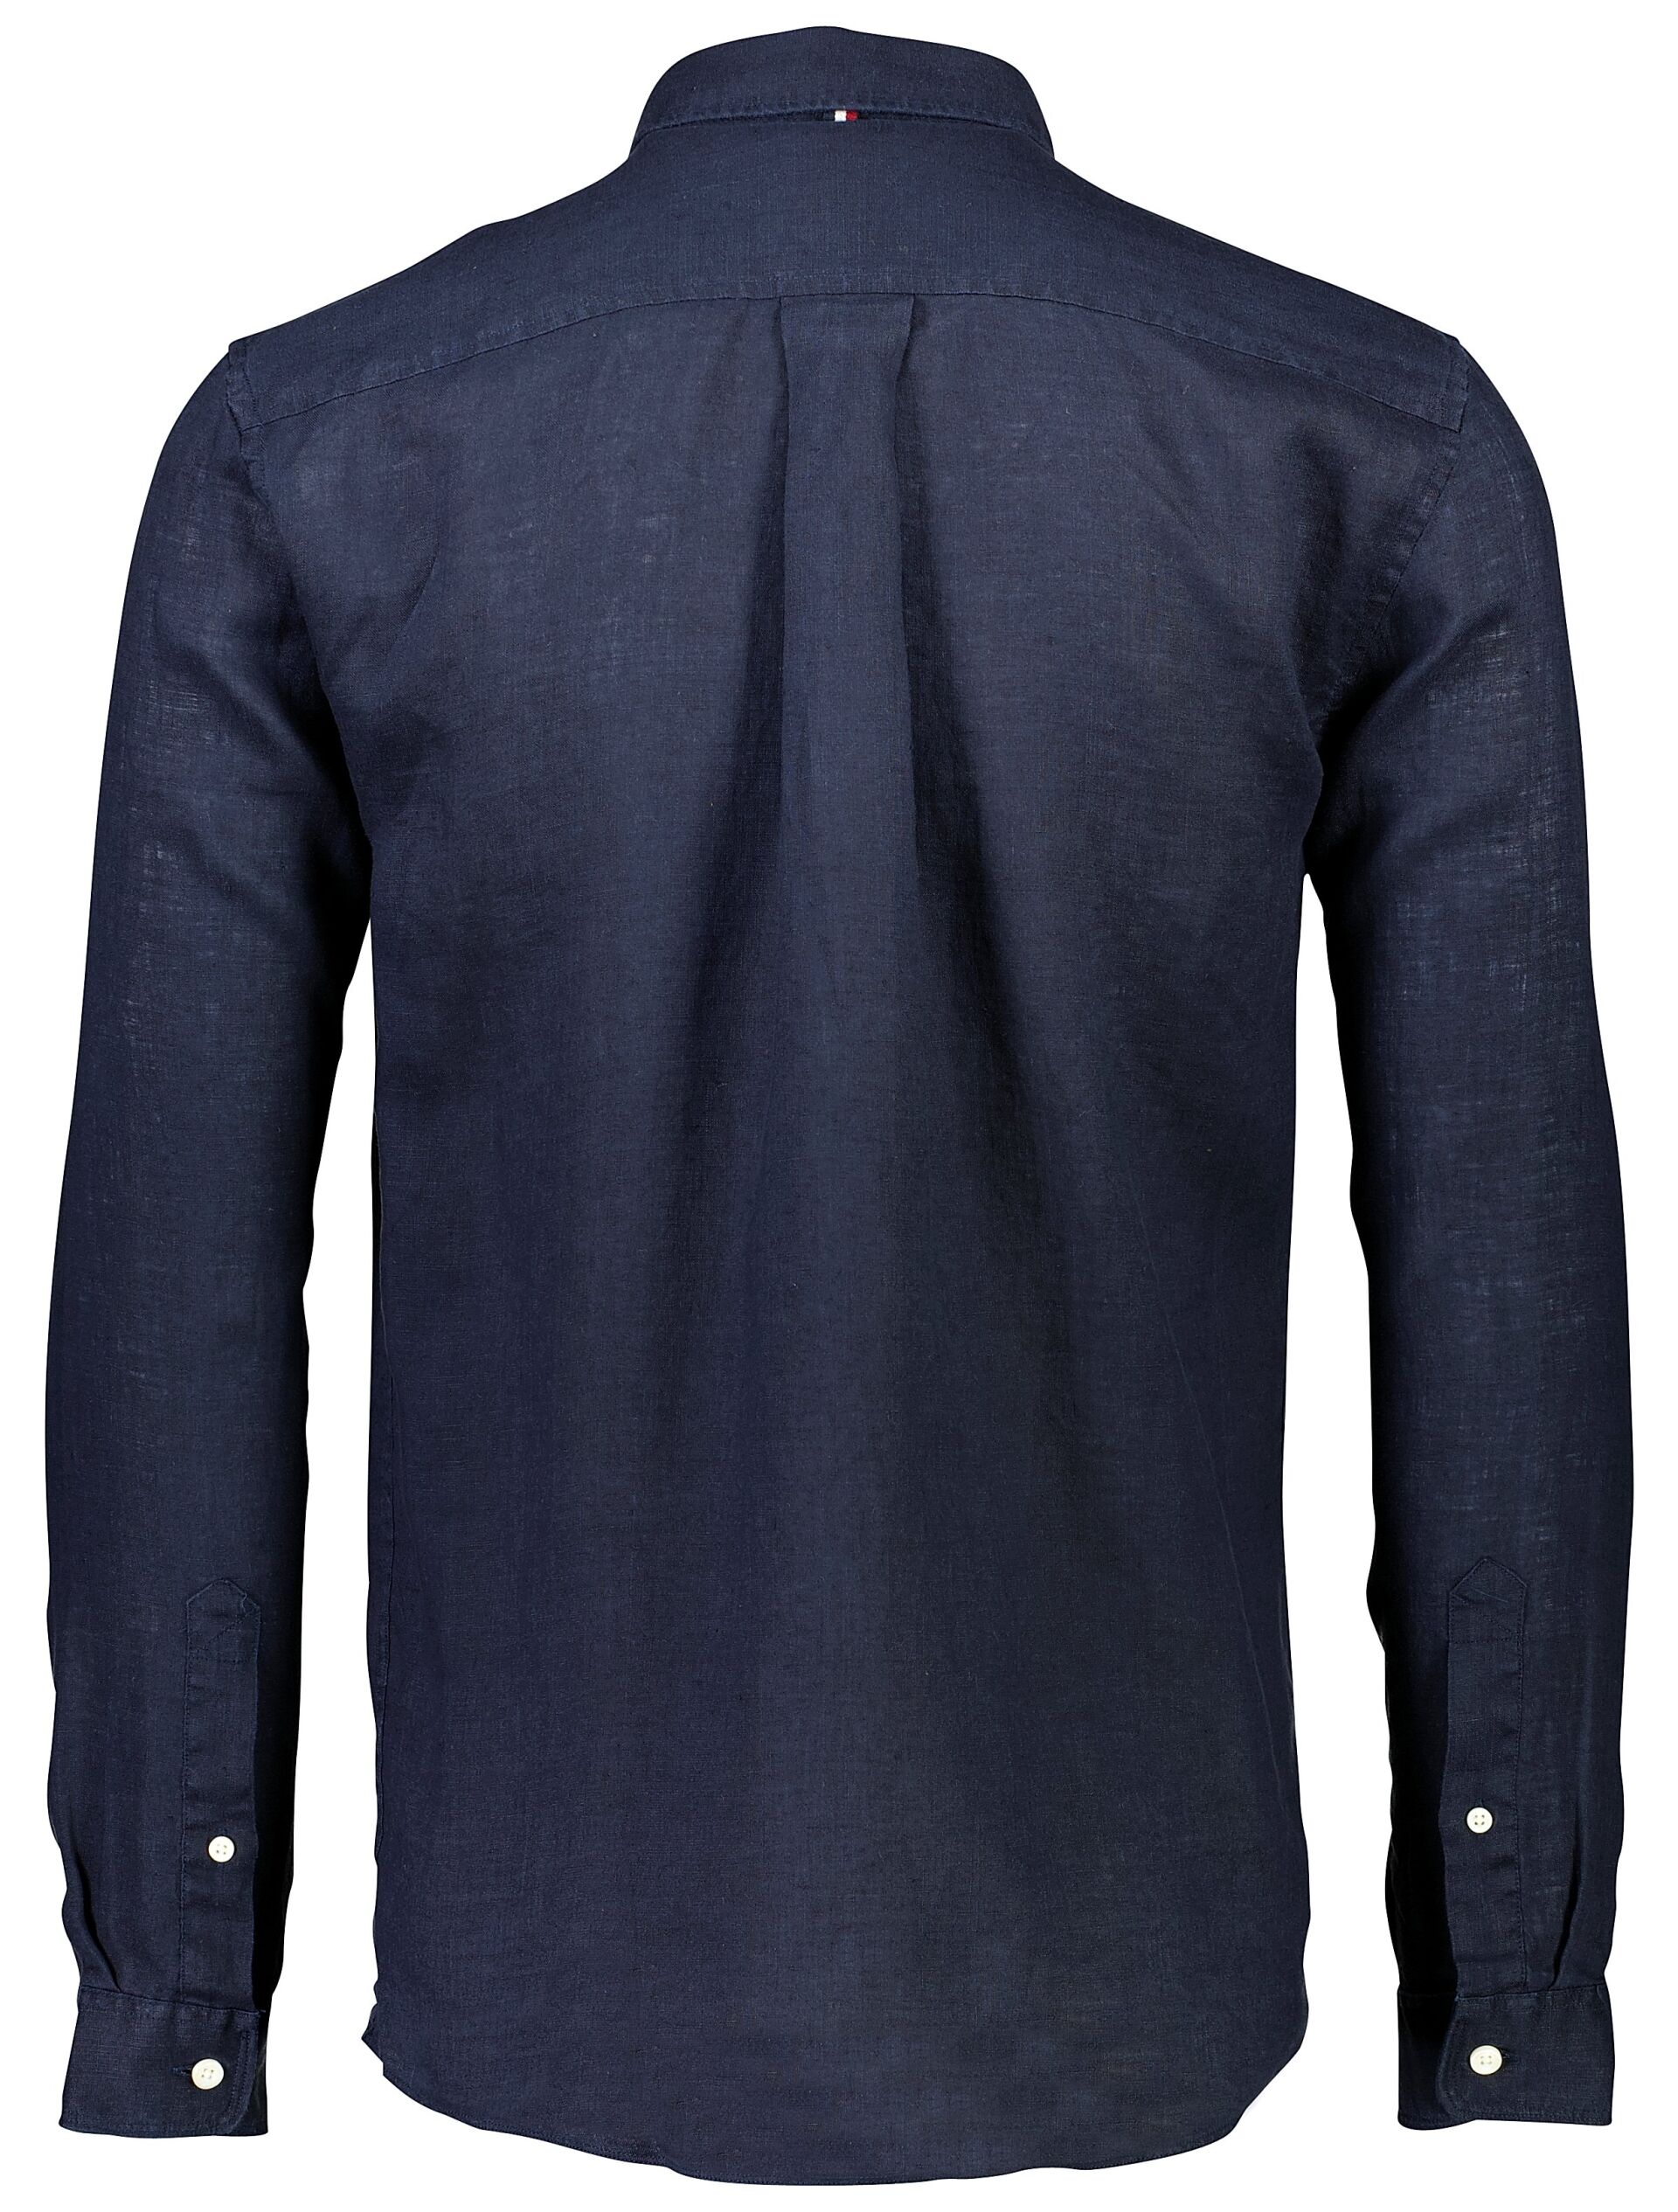 Linen shirt 30-220176